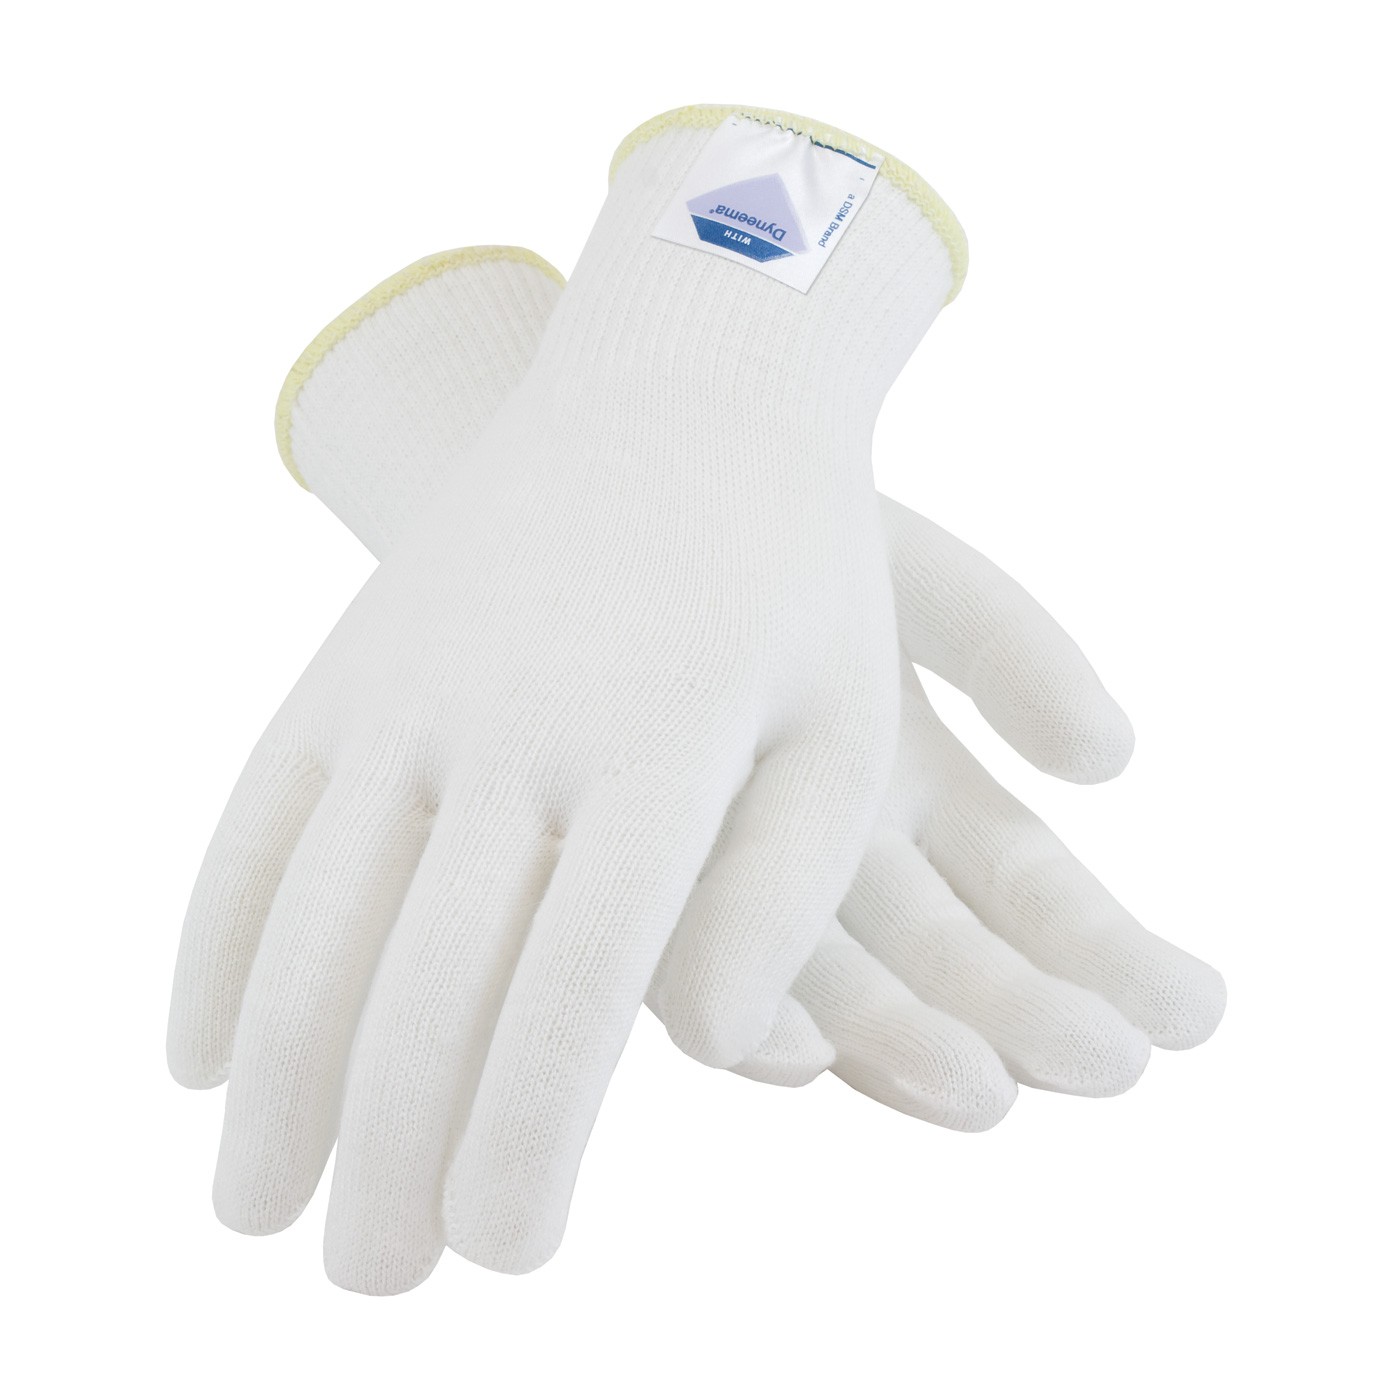 Gloves with Spun Dyneema, 13 Gauge, White, Light Weight, ANSI2 Size X-Large